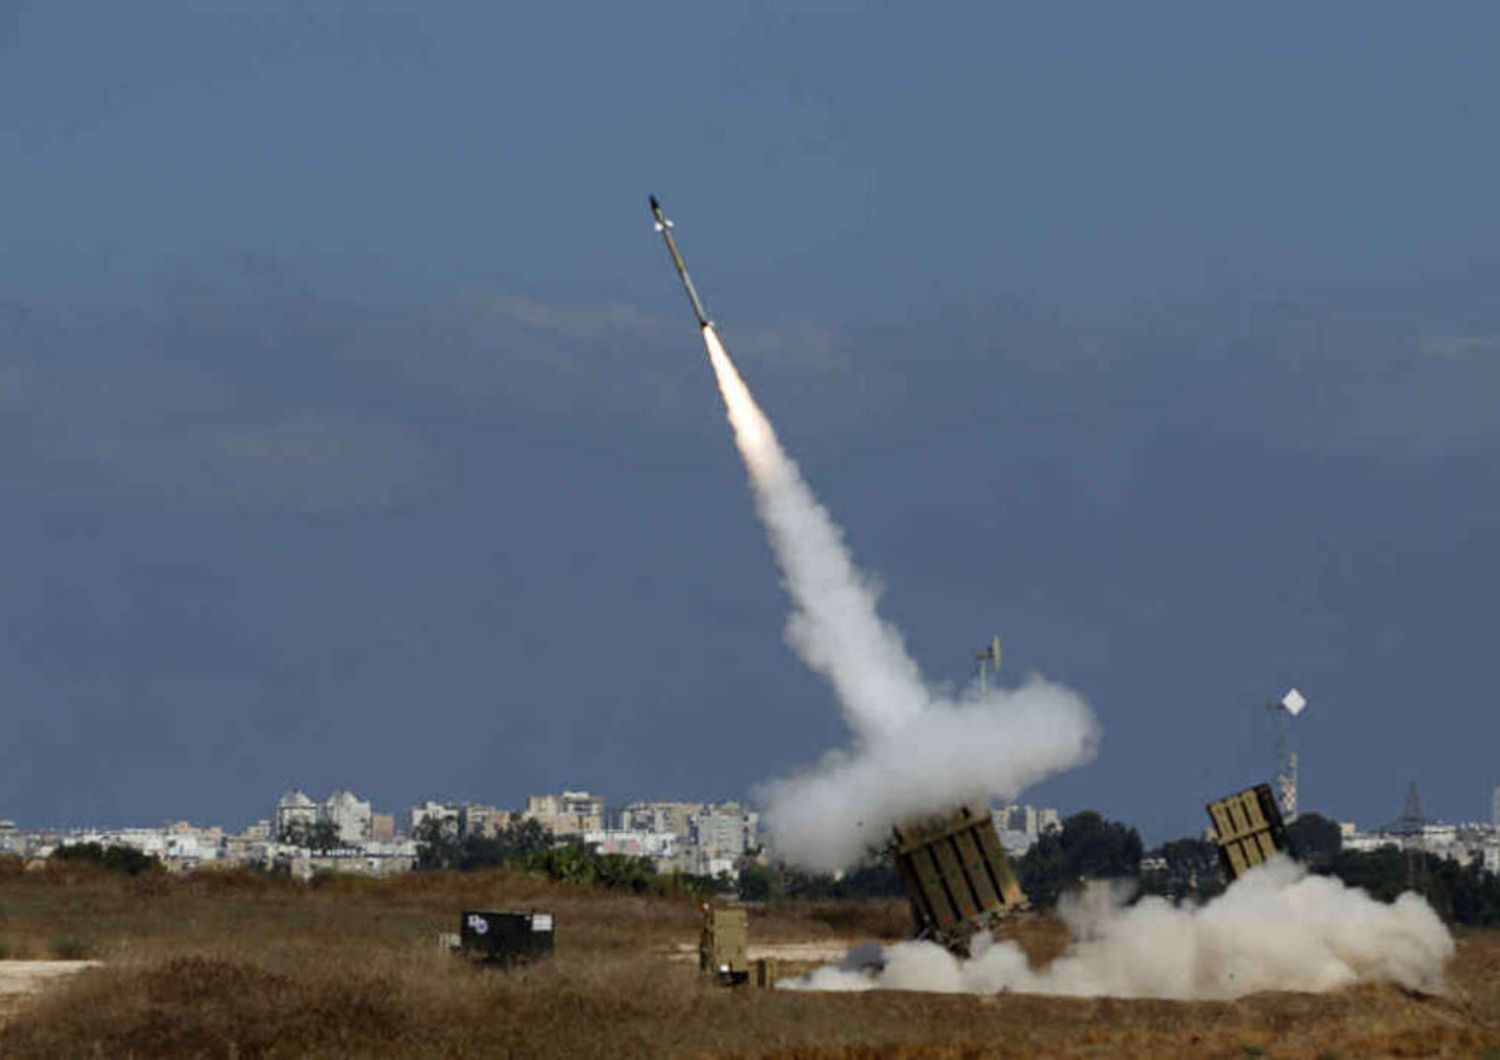 Pioggia di razzi su Israele, suona a piu' riprese l'allarme